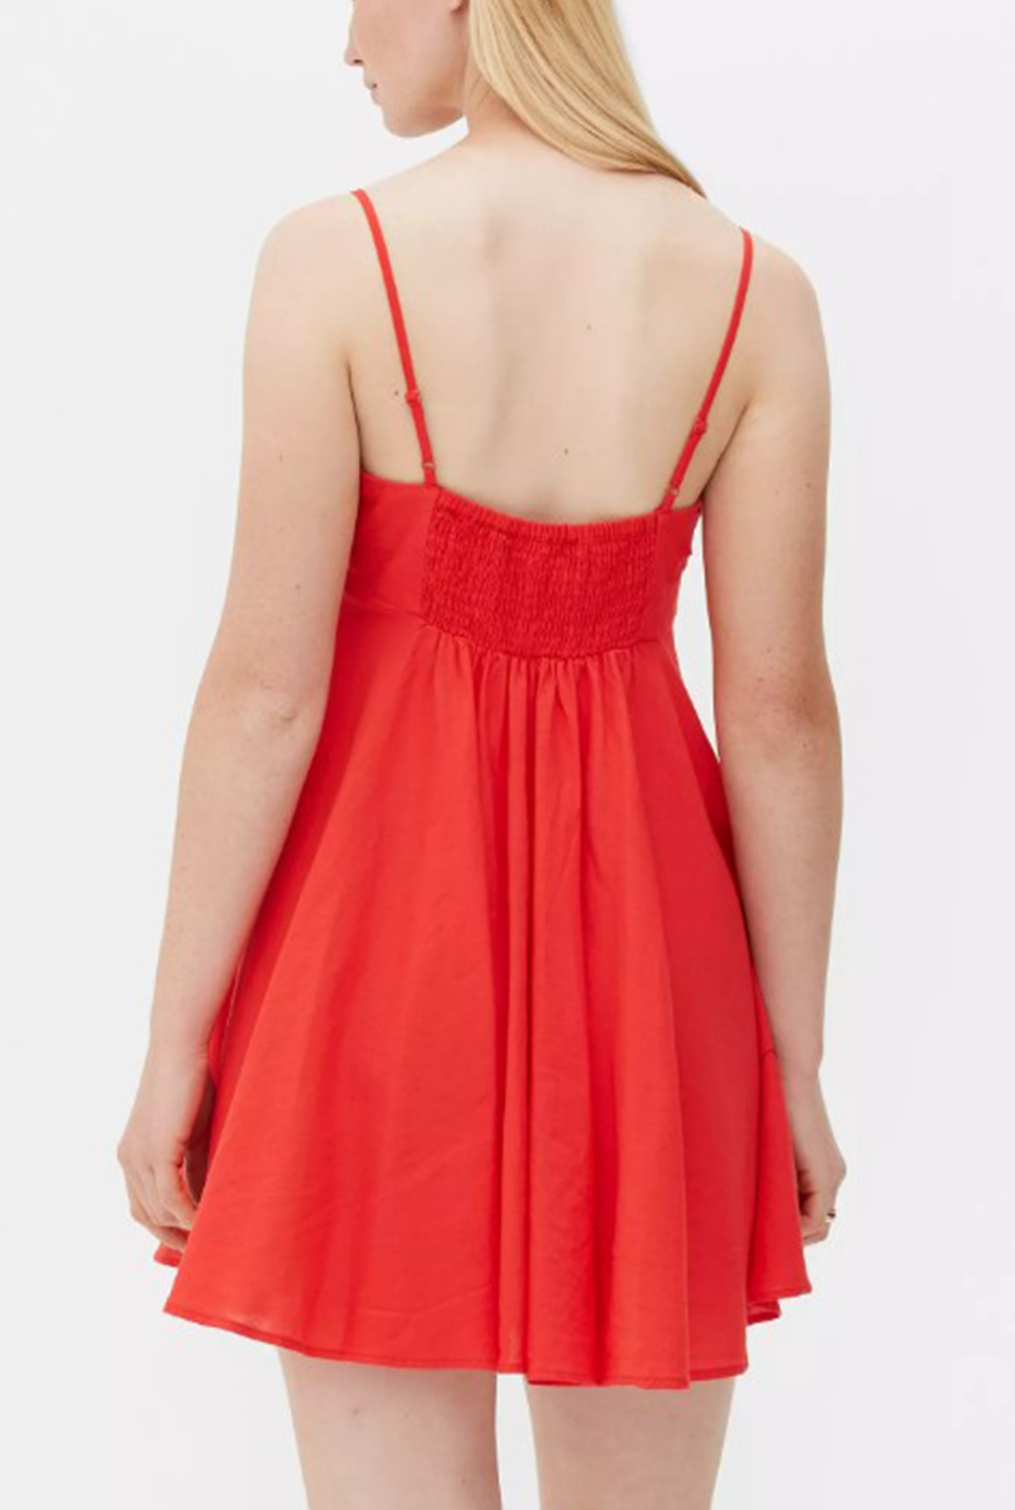 Irreverent Red Dress